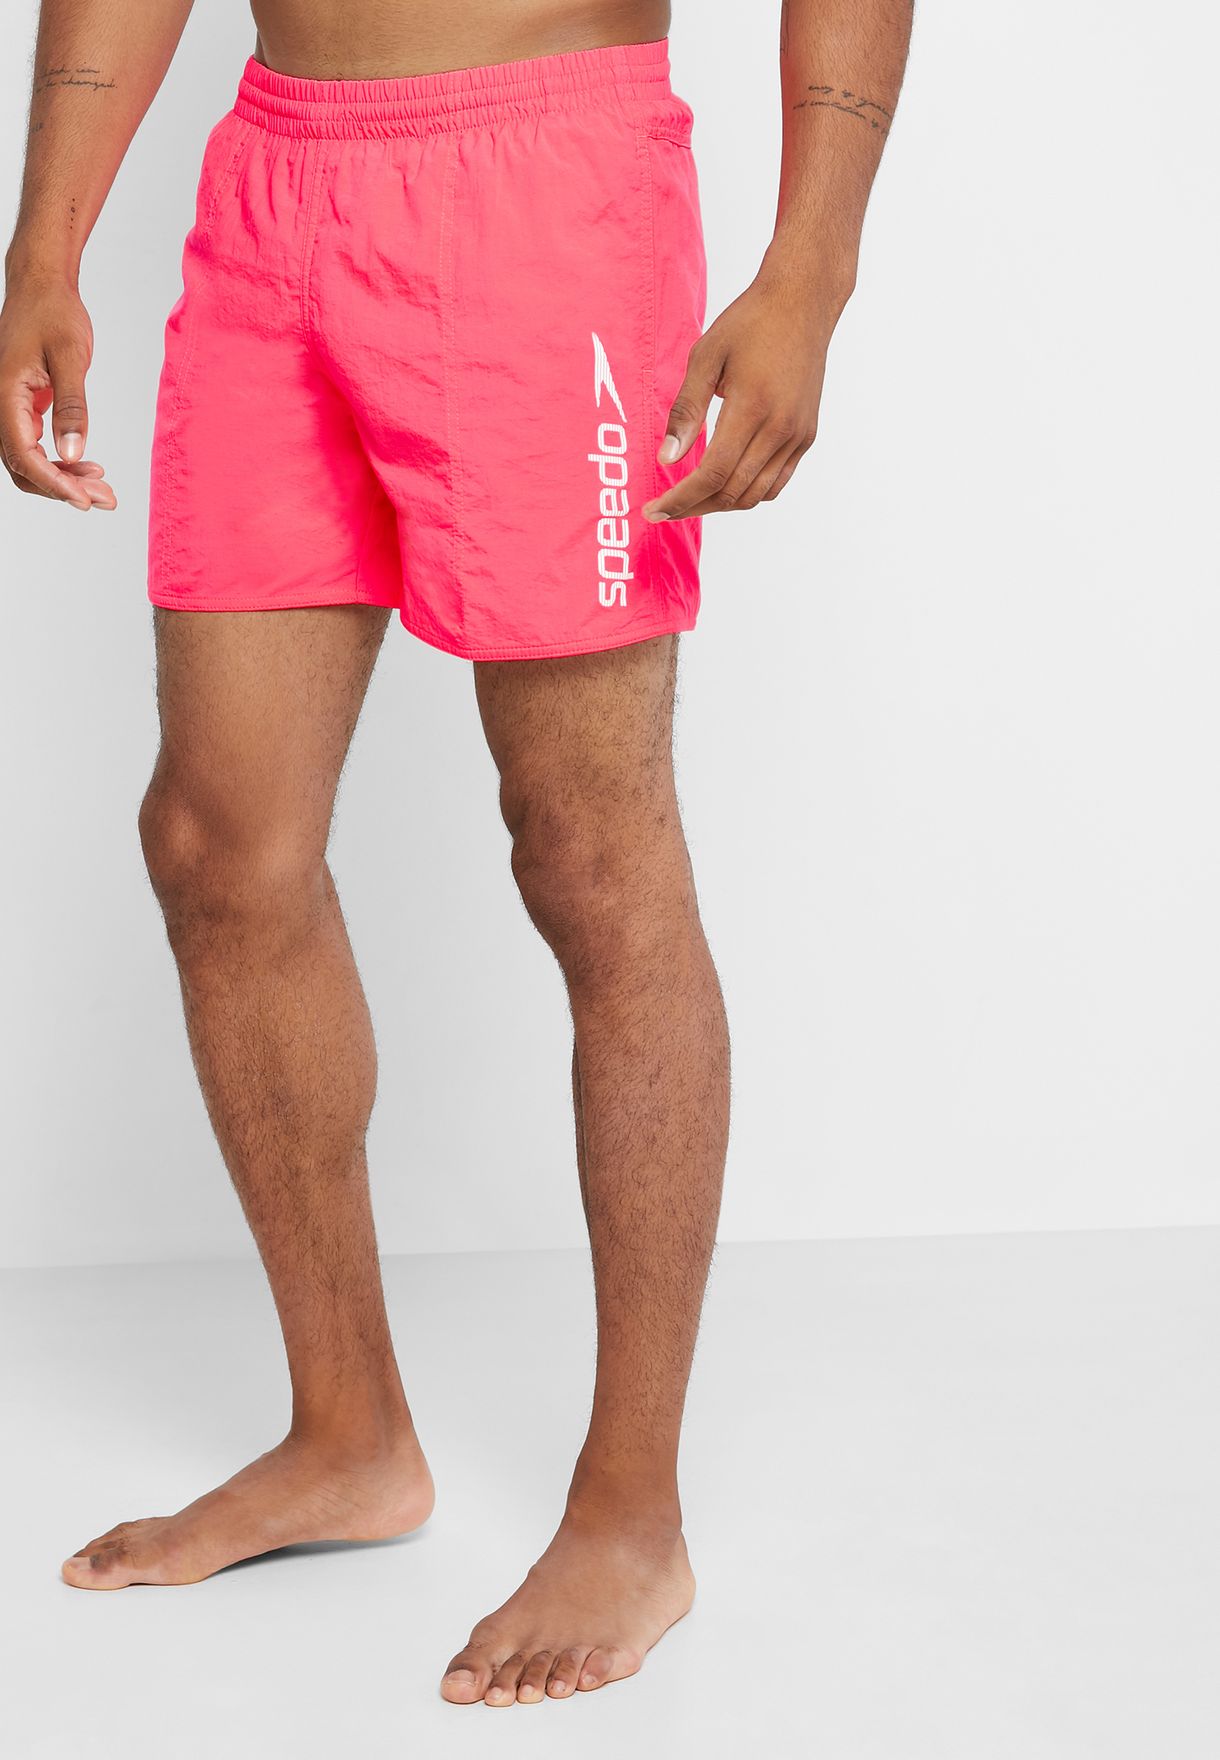 Oferta de trabajo cliente Tío o señor Buy Speedo pink Scope 16&quot; Water Shorts for Men in MENA, Worldwide